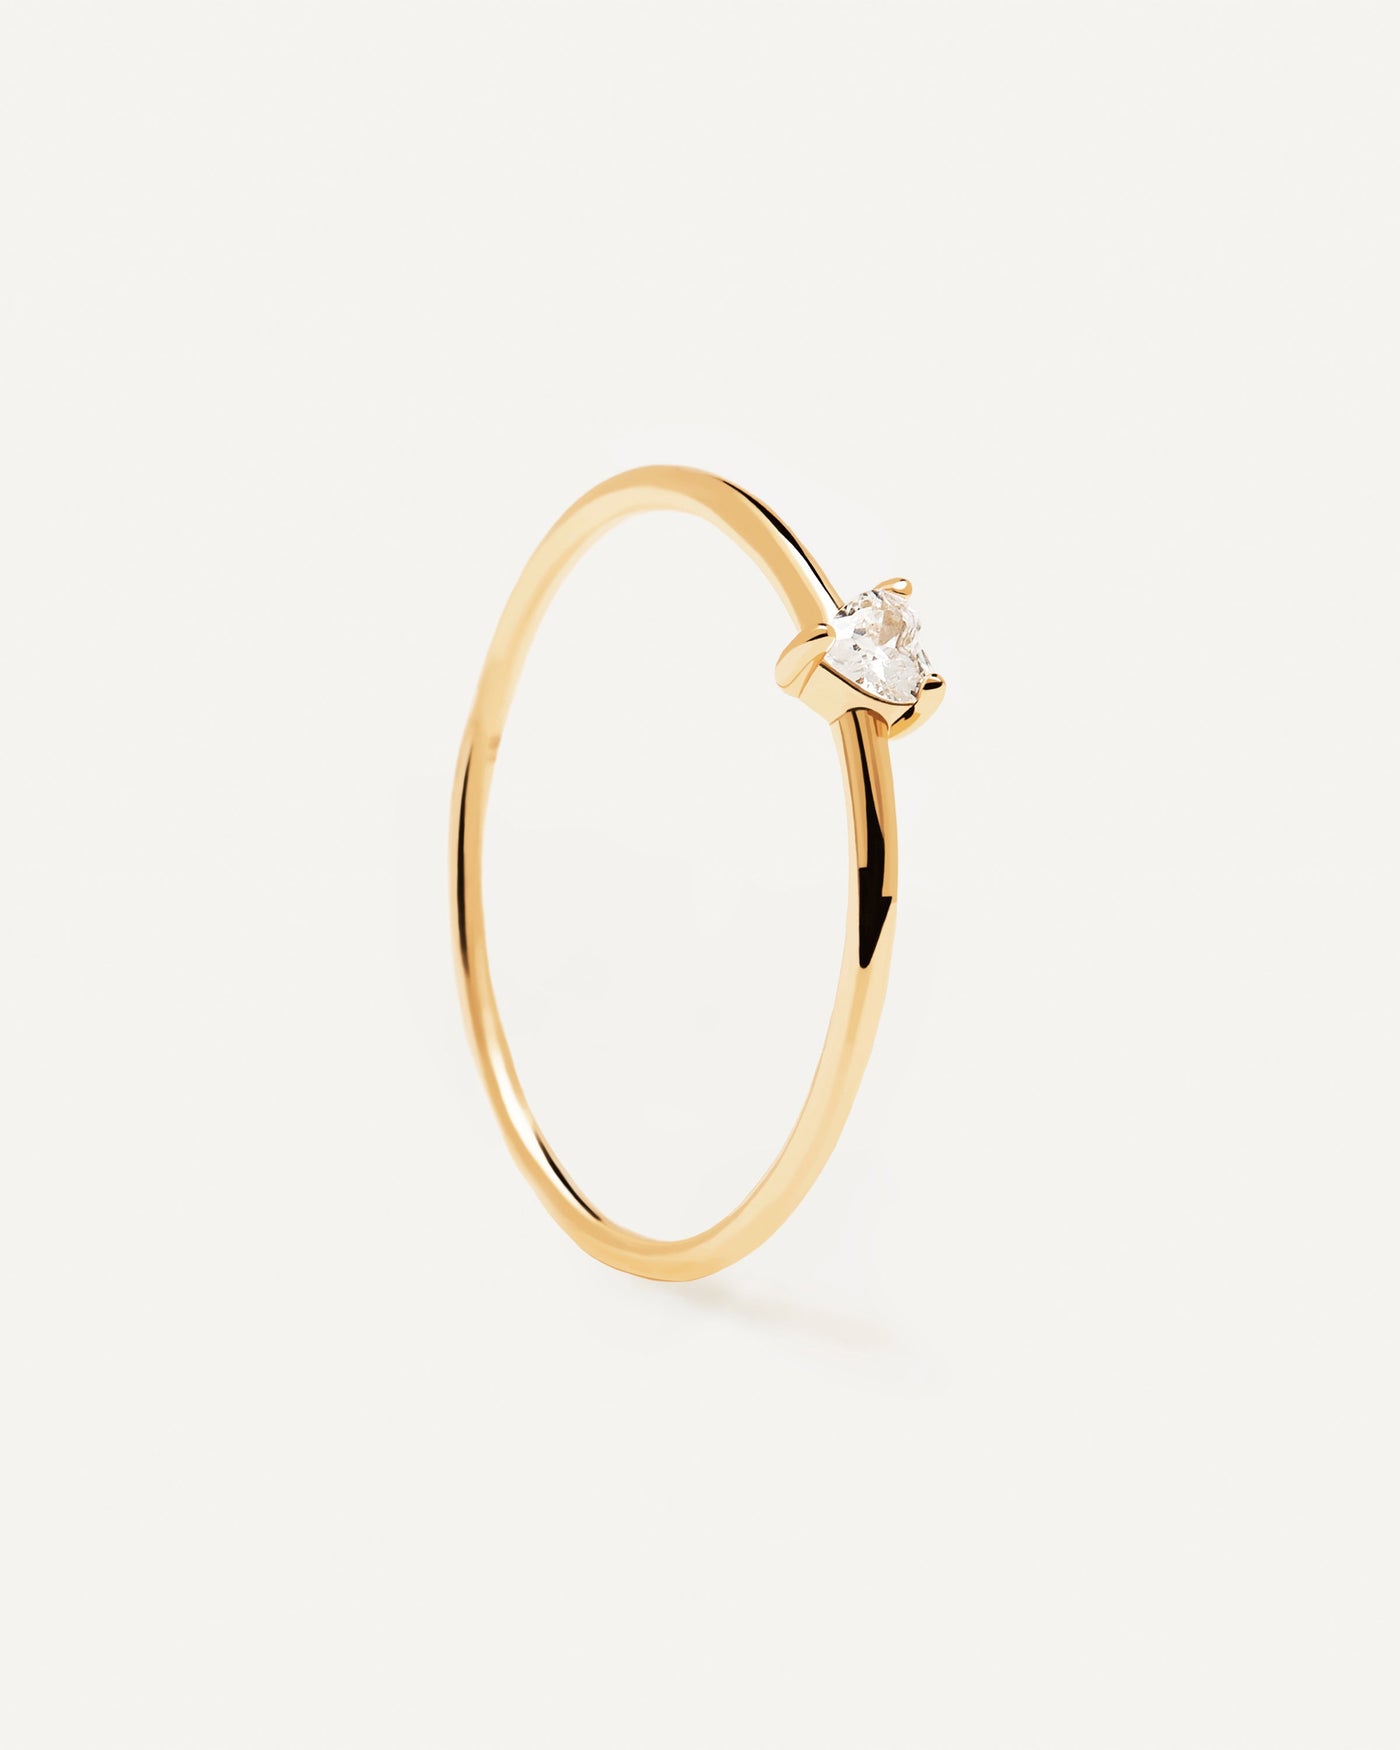 White Heart Ring. 18k gold plattierter silberring mit einem herzförmigen weißen zirkonia. Erhalten Sie die neuesten Produkte von PDPAOLA. Geben Sie Ihre Bestellung sicher auf und erhalten Sie diesen Bestseller.